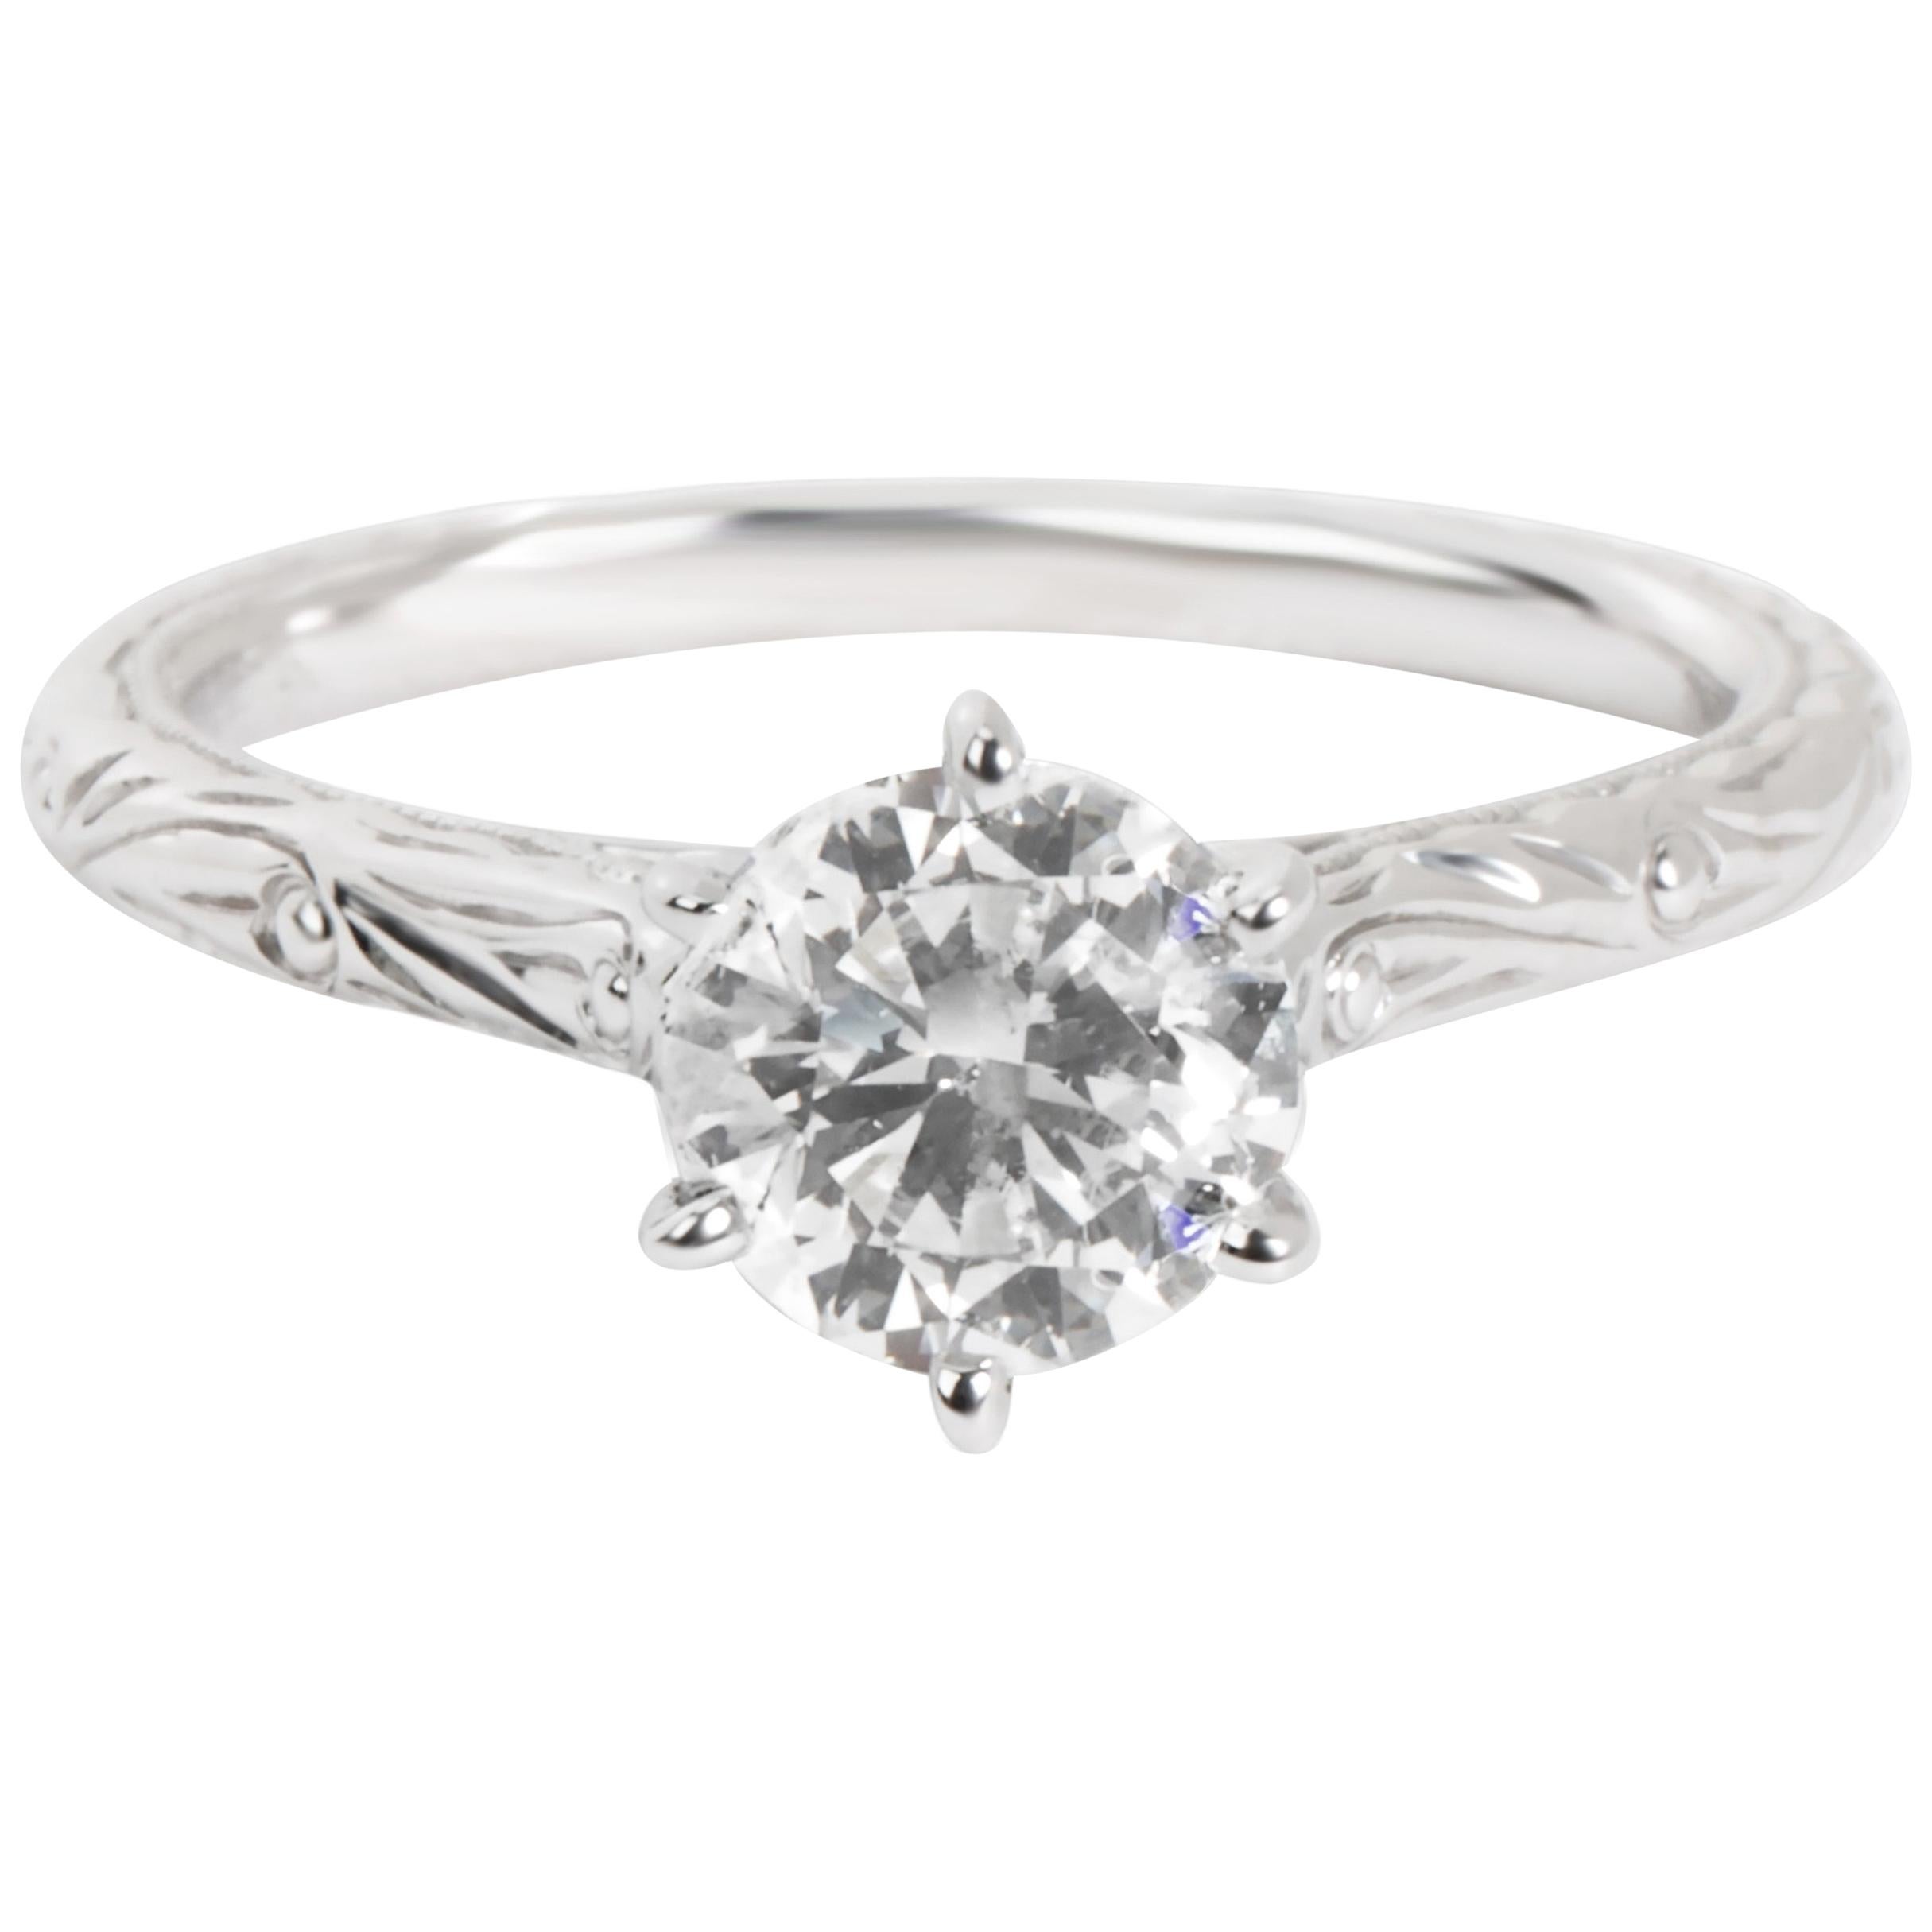 GIA Certified Diamond Engagement Ring in 14 Karat White Gold 1.01 Carat